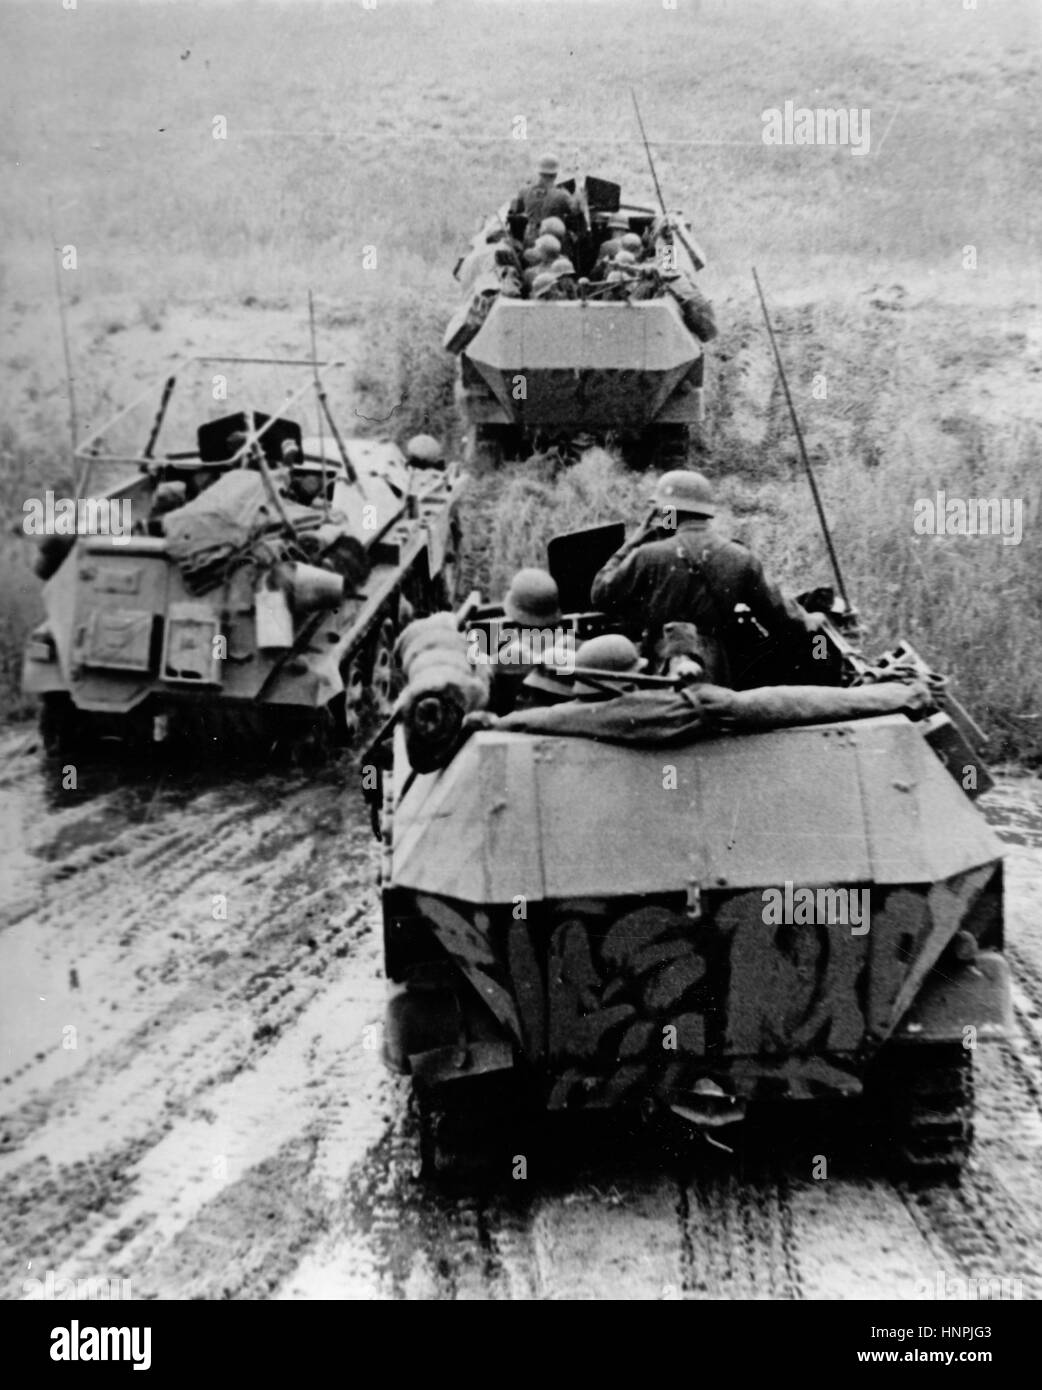 L'image de propagande nazie montre les chars allemands Wehrmacht dans la zone de conflit de Stalingrad (aujourd'hui Volgograd). Pris en septembre 1942. Fotoarchiv für Zeitgeschichte - PAS DE SERVICE DE FIL - | utilisation dans le monde entier Banque D'Images